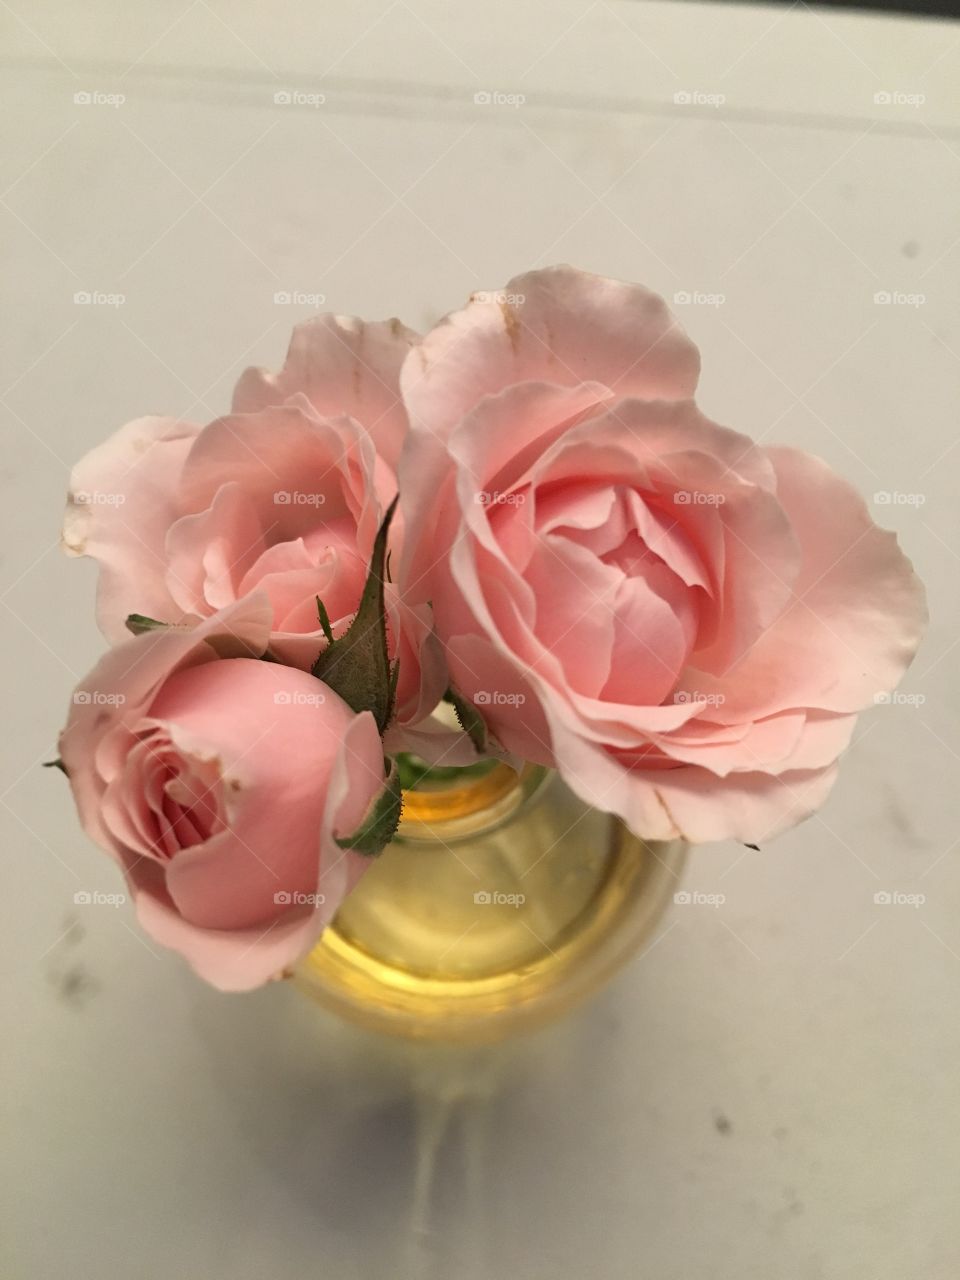 Bella foto de rosas cálidas  y delicadas en completa armonía 